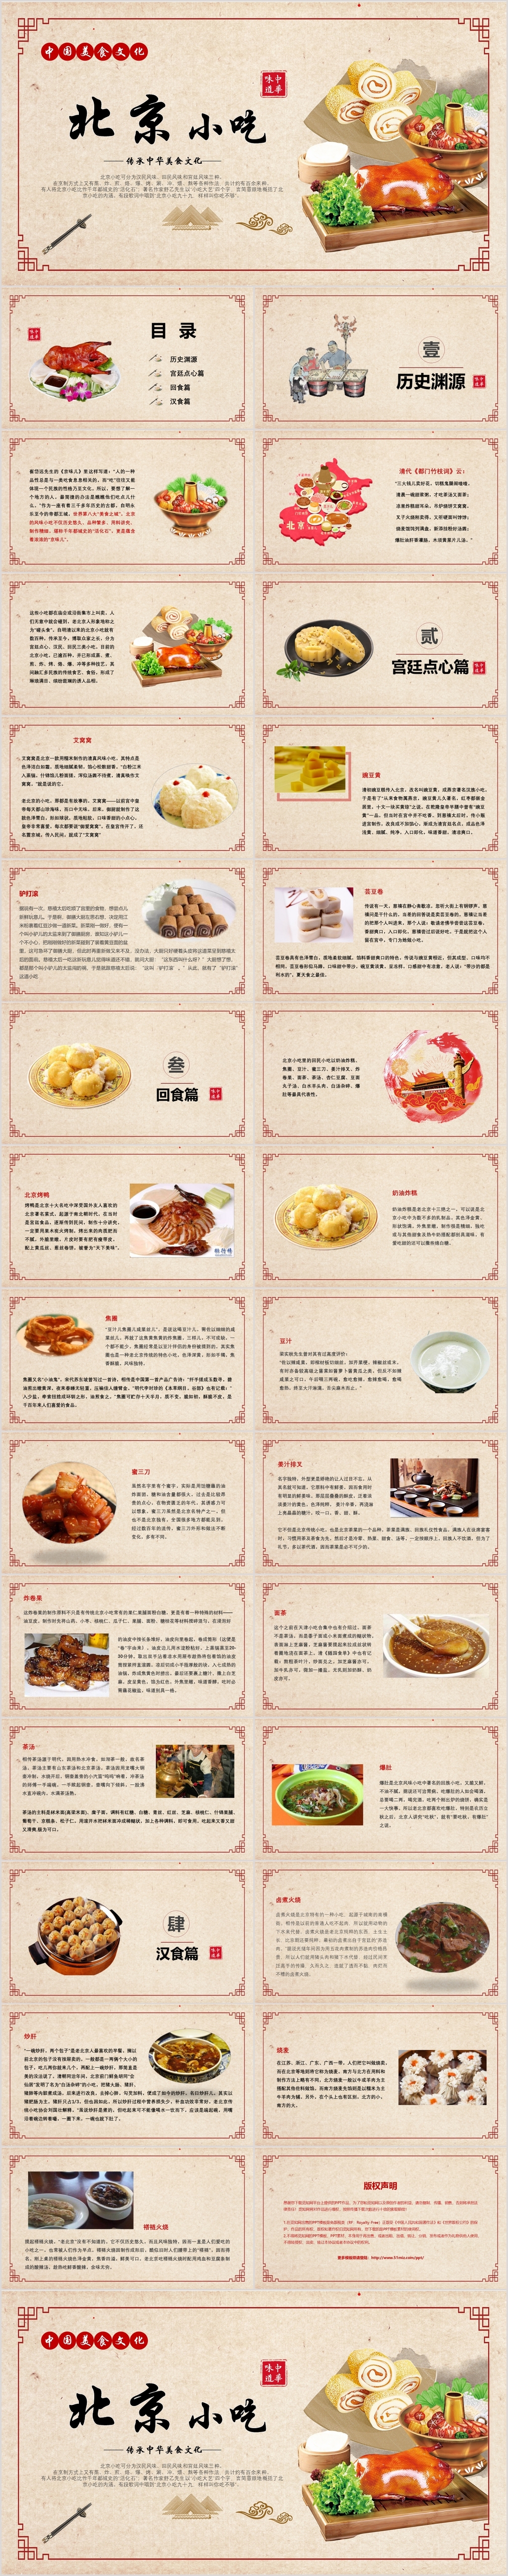 米色图文结合北京小吃中国美食文化介绍推广展示PPT模板